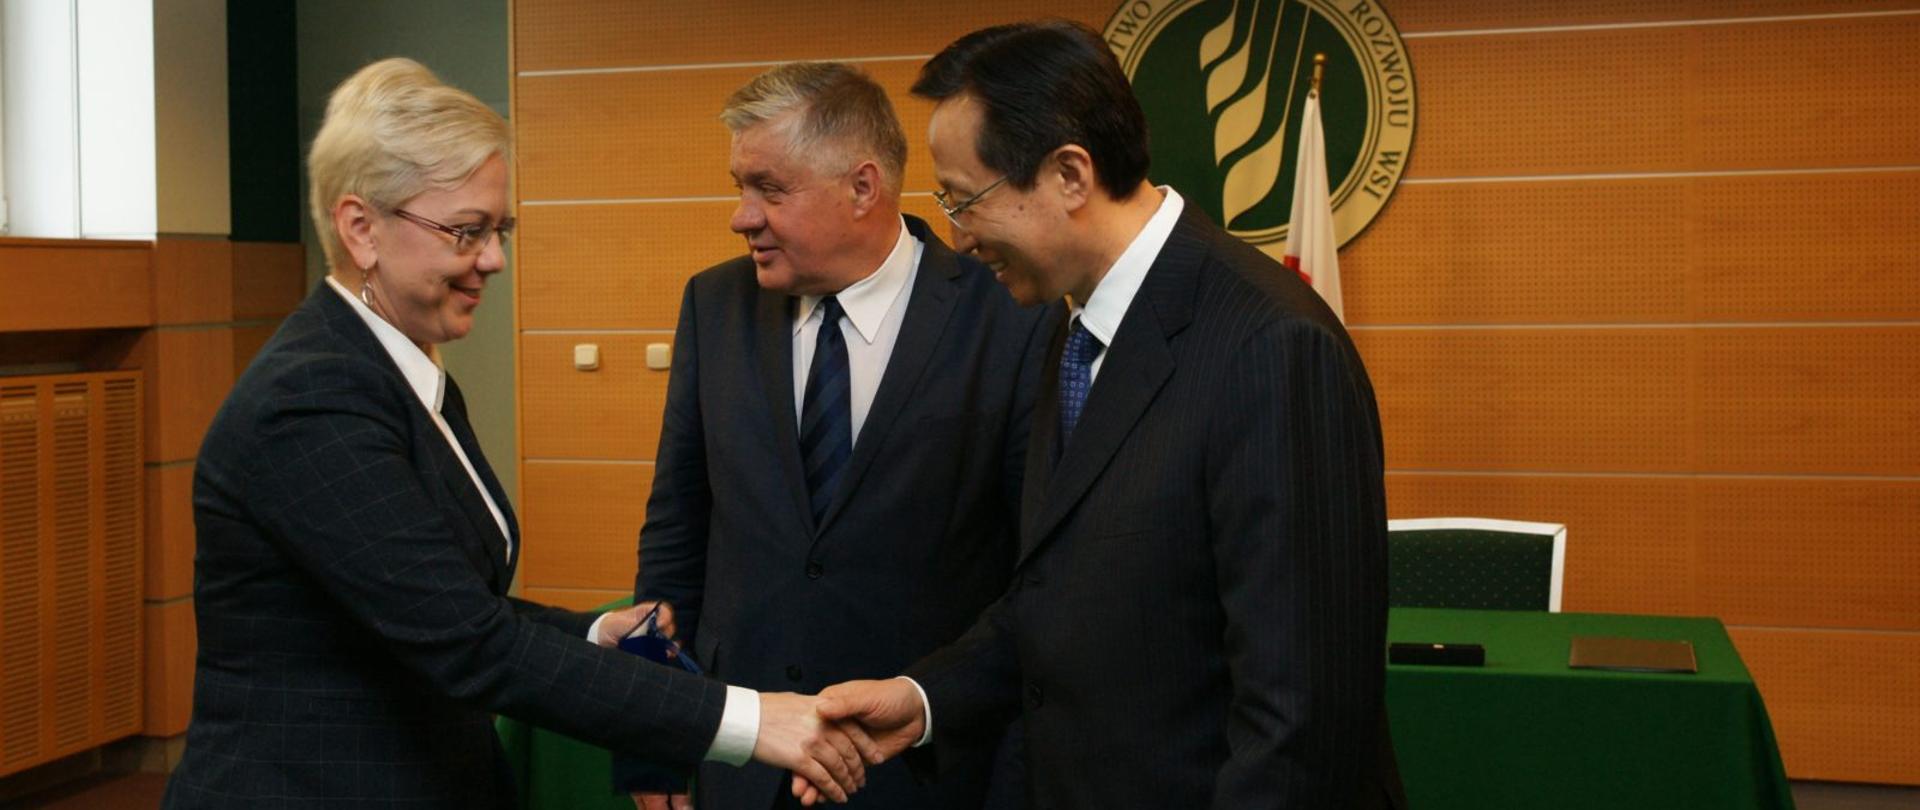 Na zdjęciu wiceminister Anna Moskwa wita się z ministrem Chin